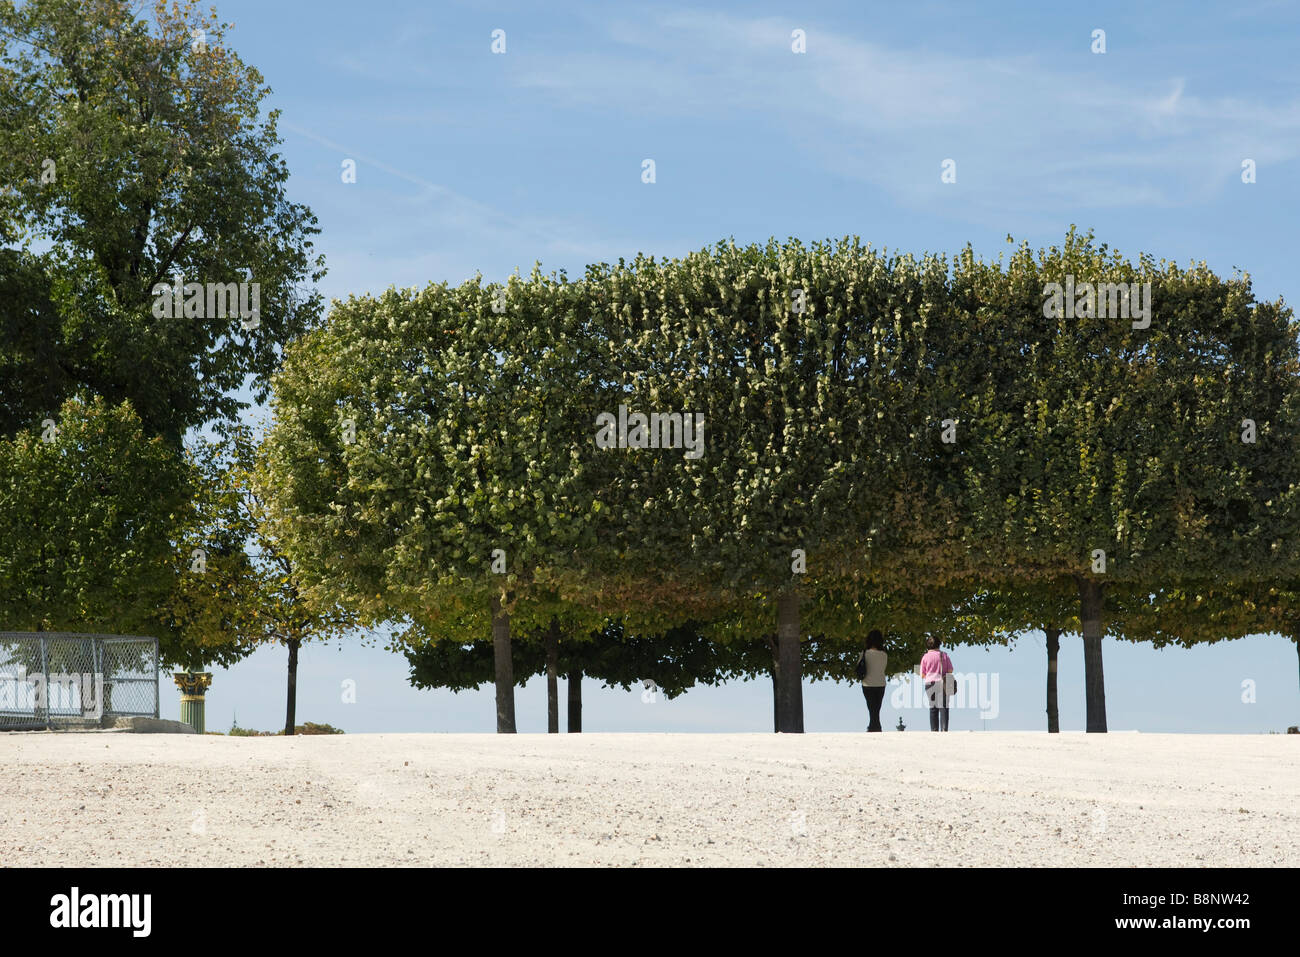 Frankreich, Paris, Leute zu Fuß unter Bäumen im park Stockfoto